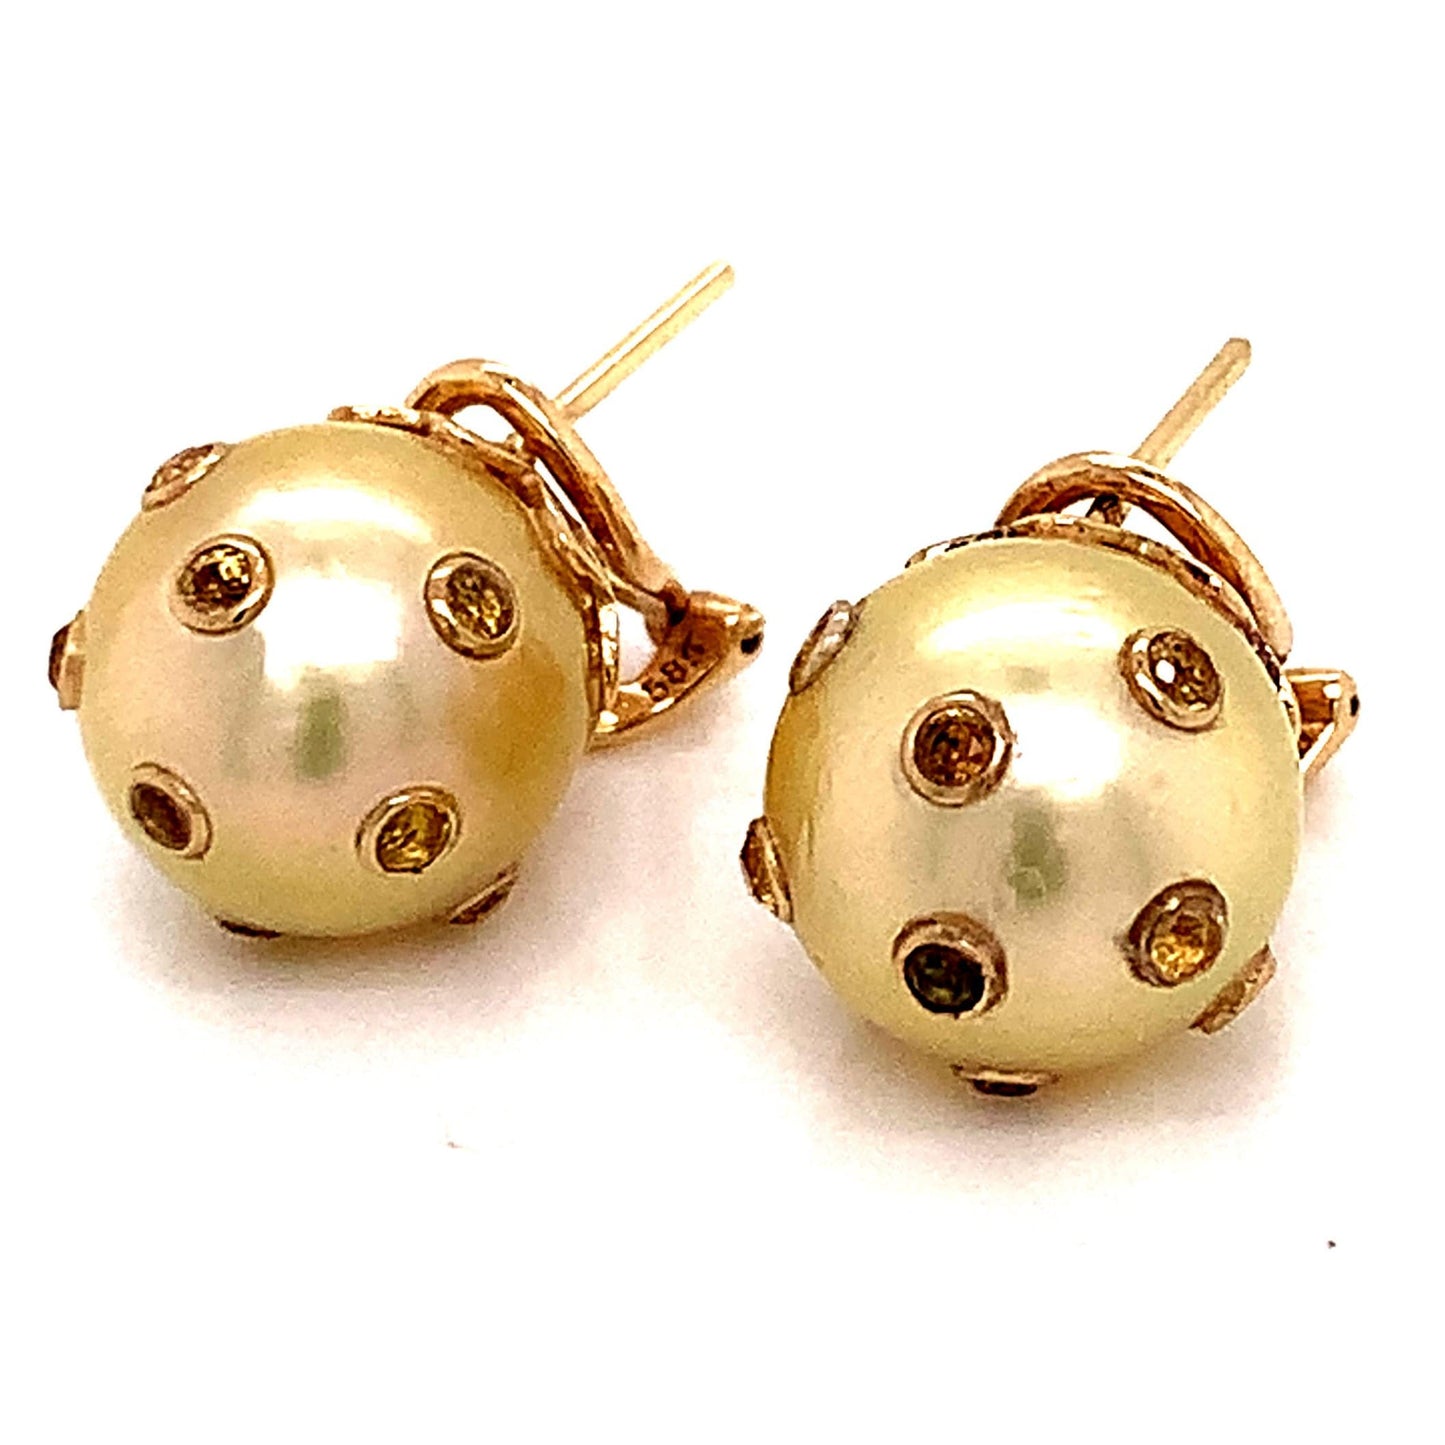 South Sea Pearl Sapphire Earrings 14k Gold 11.33 mm Certified $5,950 113478 - Certified Fine Jewelry